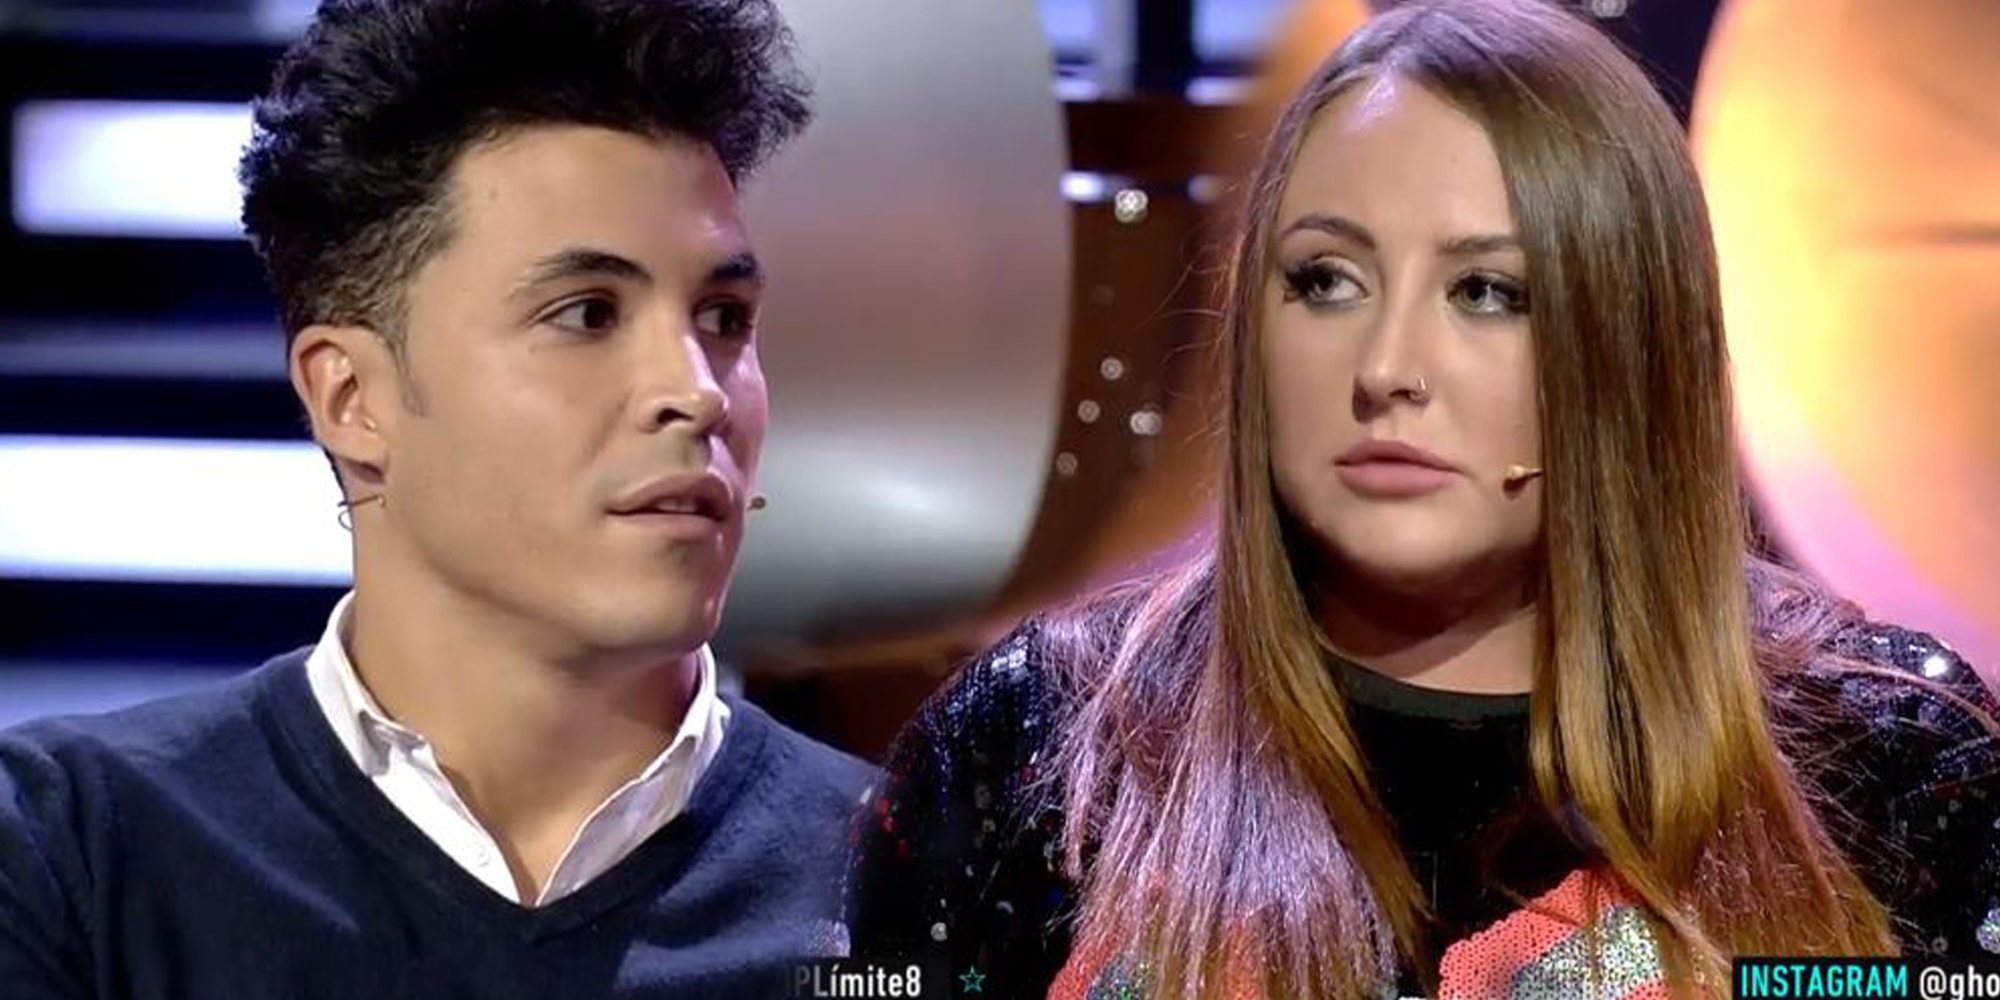 La tremenda bronca entre Kiko Jiménez y Rocío Flores en 'GH VIP 7': "No hables de mi vida"